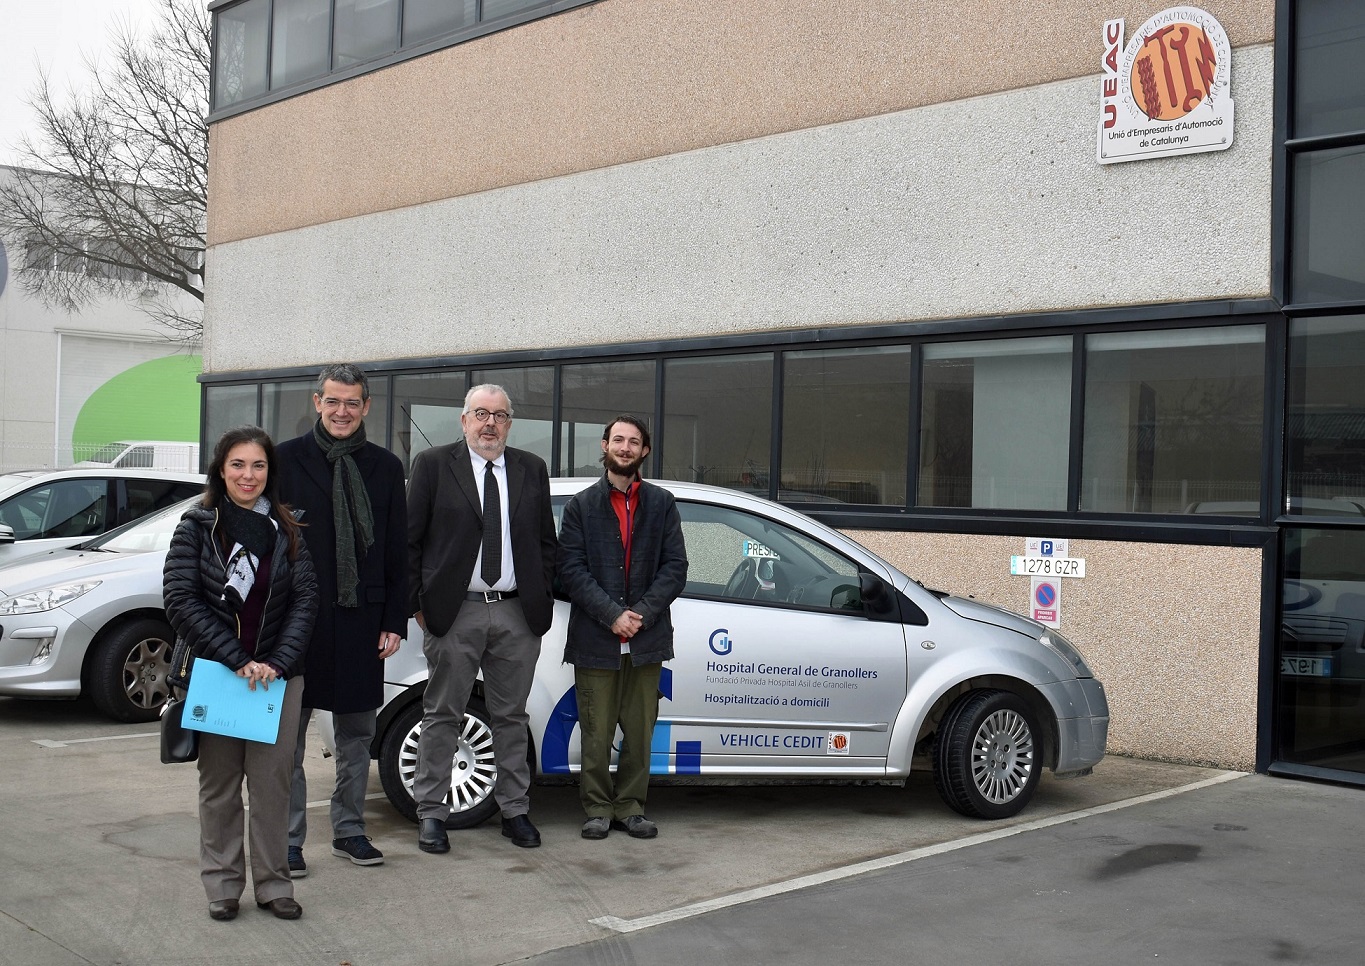 Representants de l'Hospital i de la UEAC amb el vehicle que ha cedit l'organització empresarial